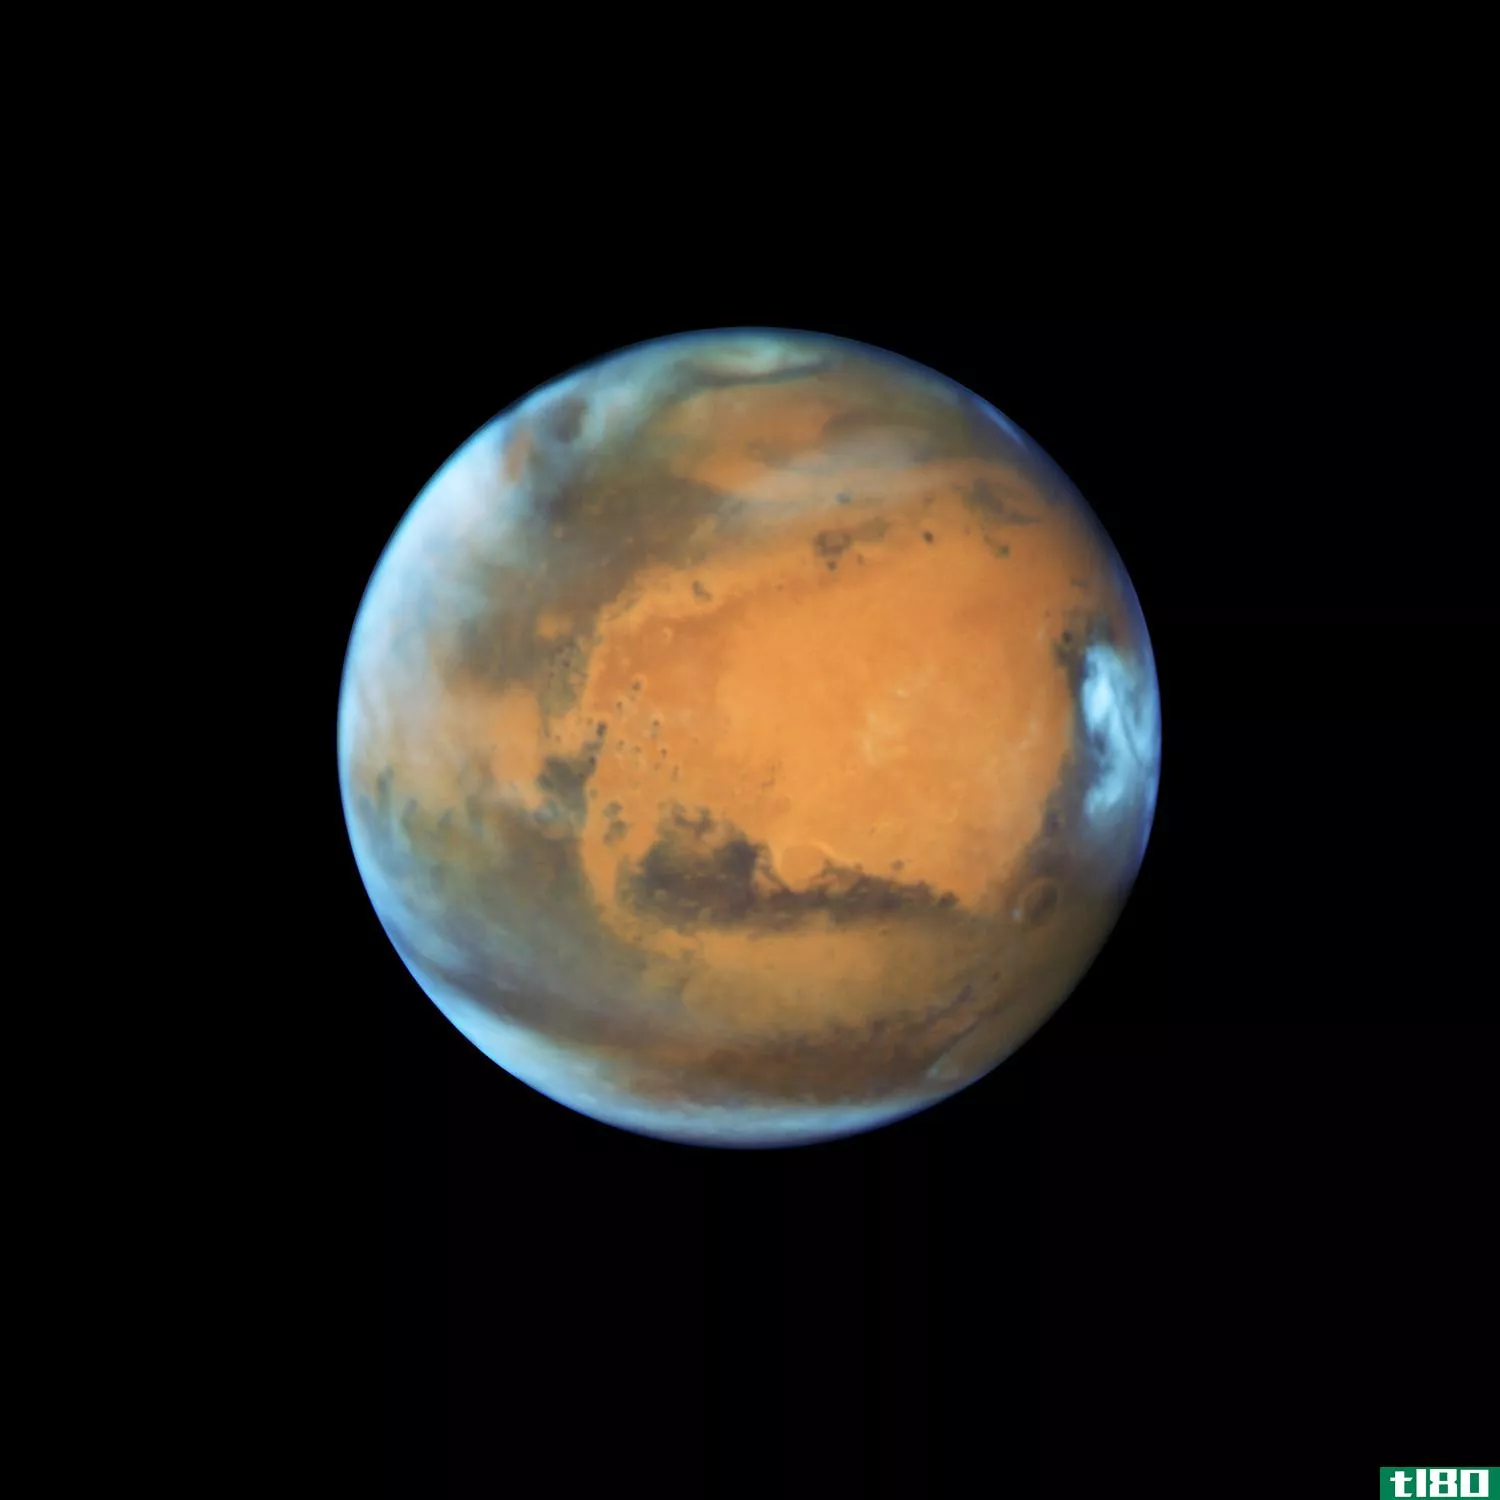 哈勃刚刚拍到了一张最酷的火星照片